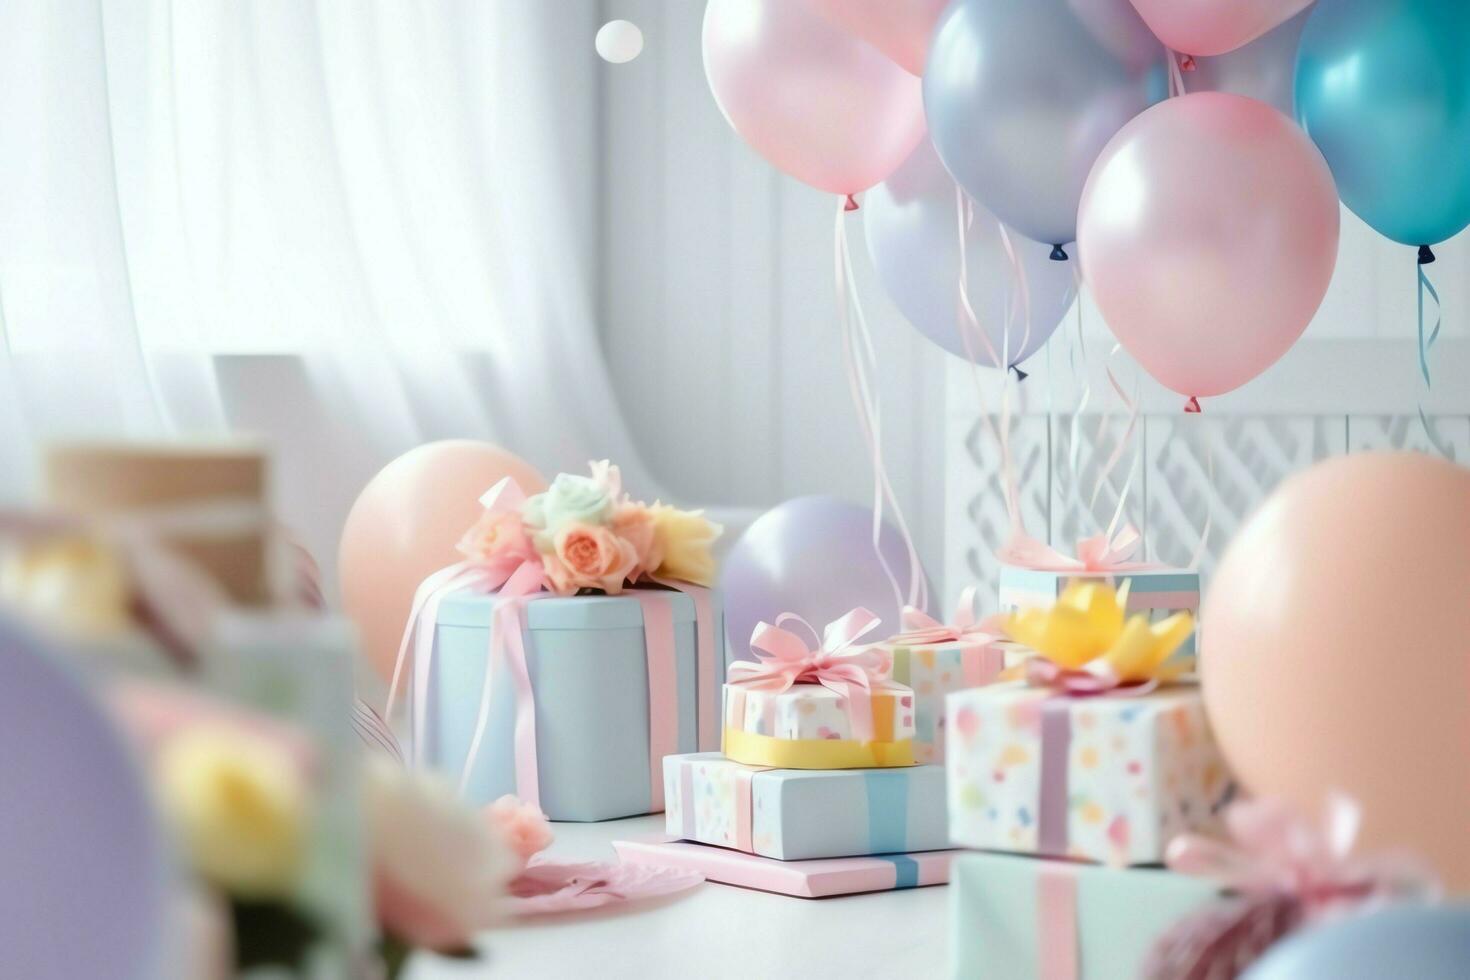 festivo aniversário festa decorações em mesa com bolo, presente caixas e balões em pastel cor conceito de ai gerado foto